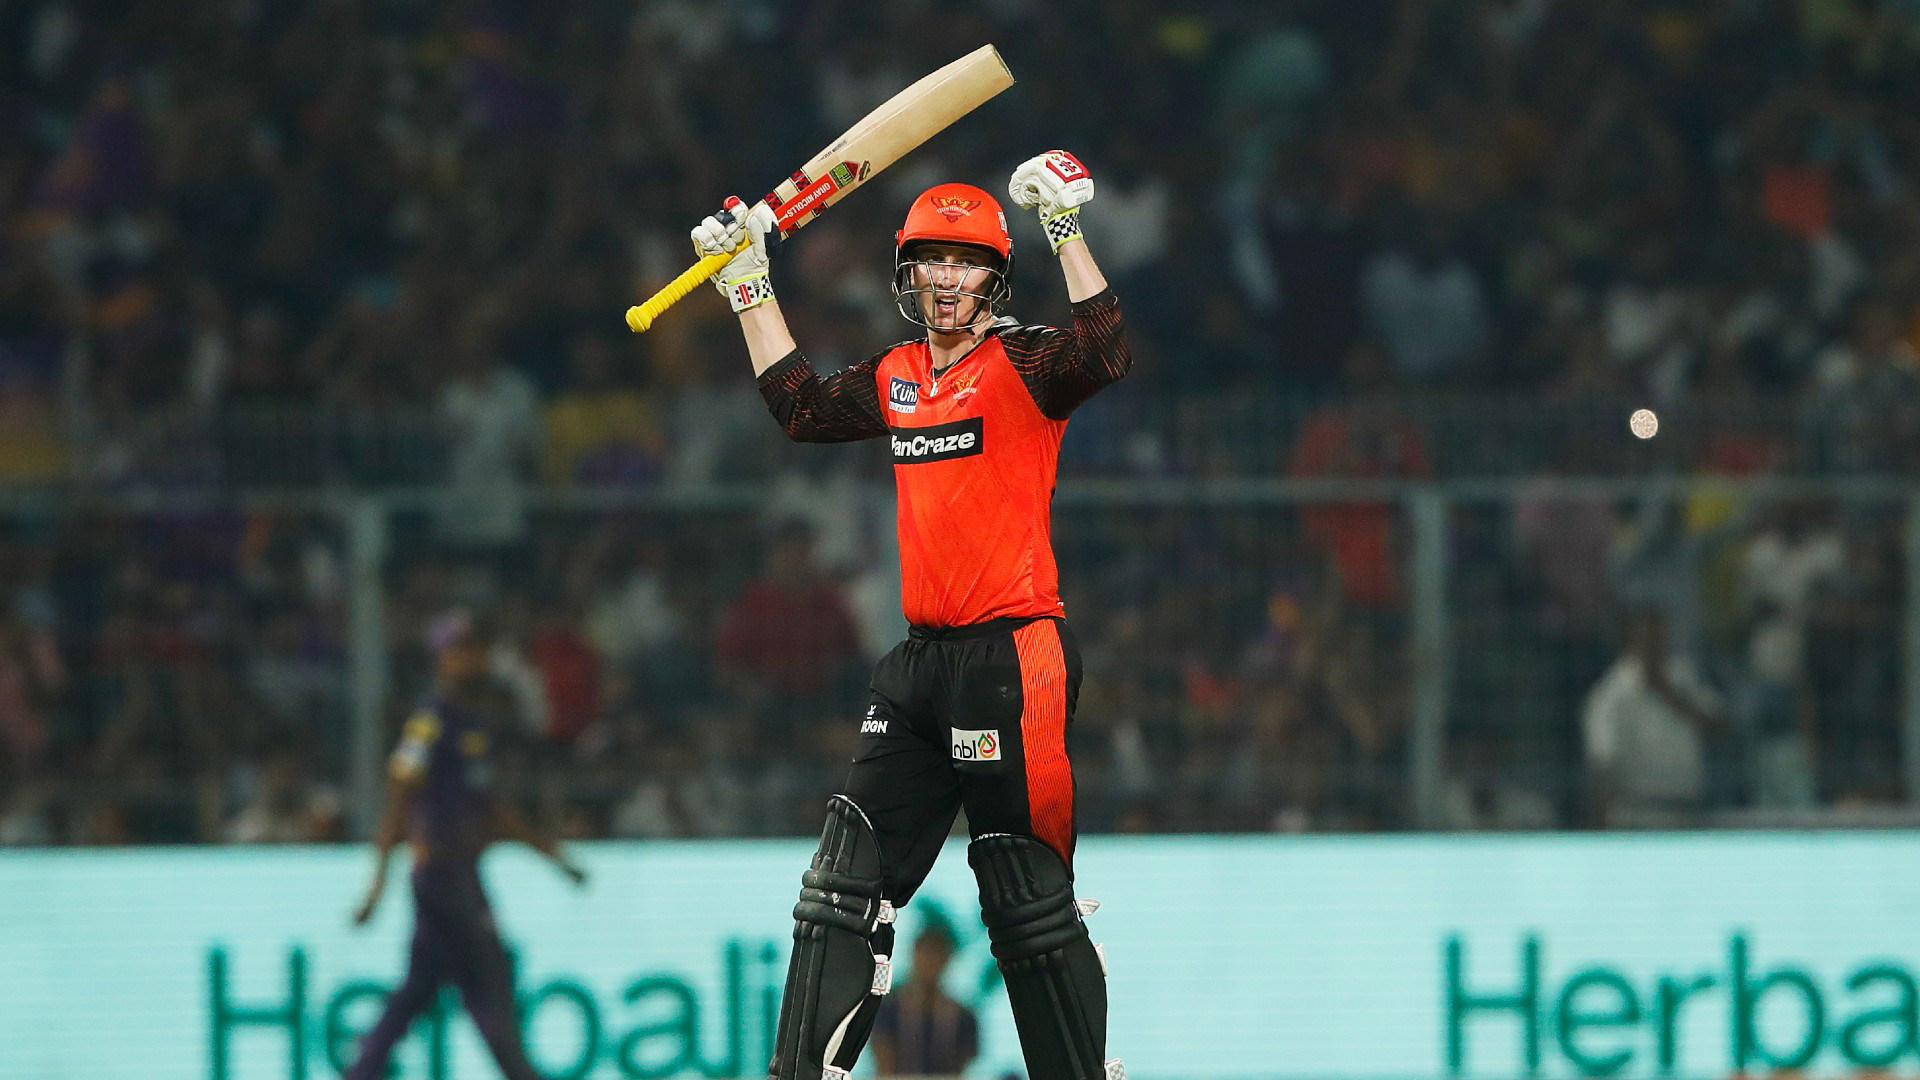 सनराइजर्स हैदराबाद के सलामी बल्लेबाज हैरी ब्रूक ने धमाकेदार प्रदर्शन करते हुए इस सीजन का पहला शतक जड़ा